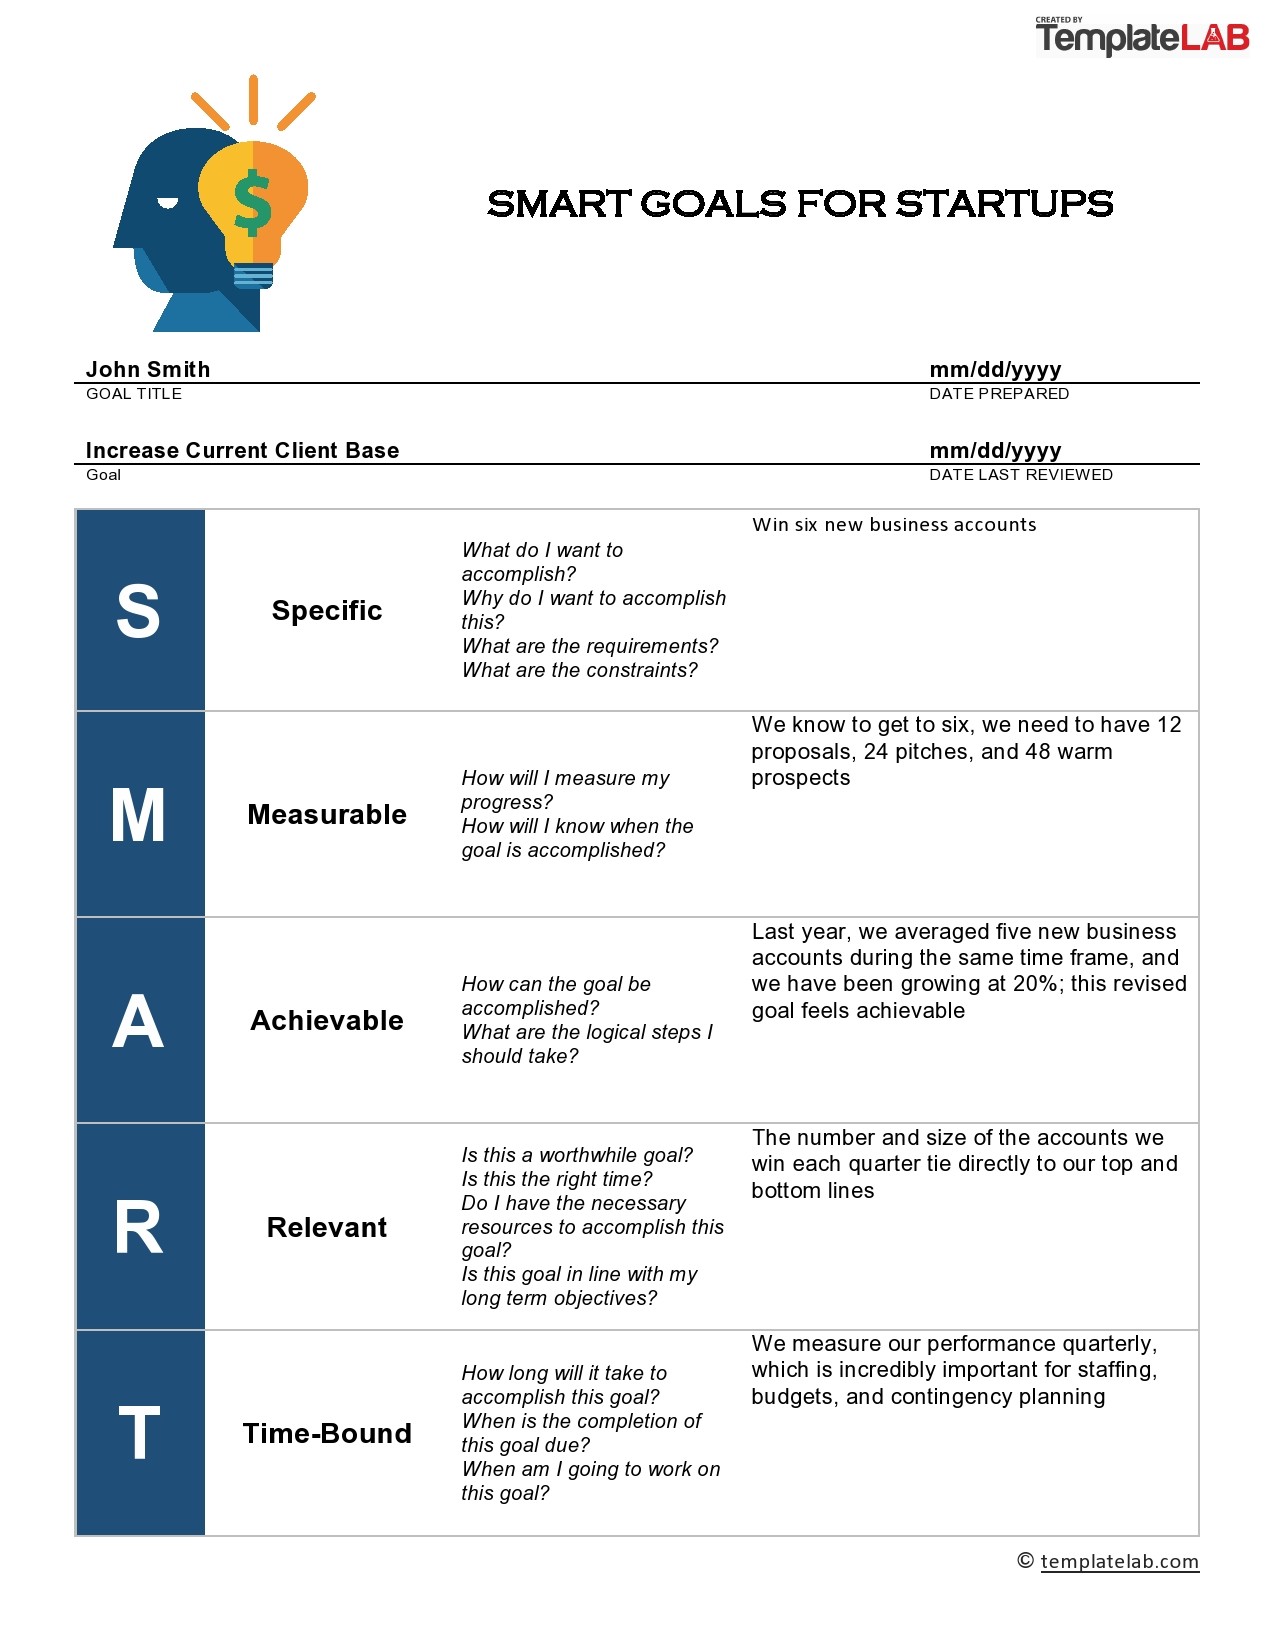 SMART goals resources